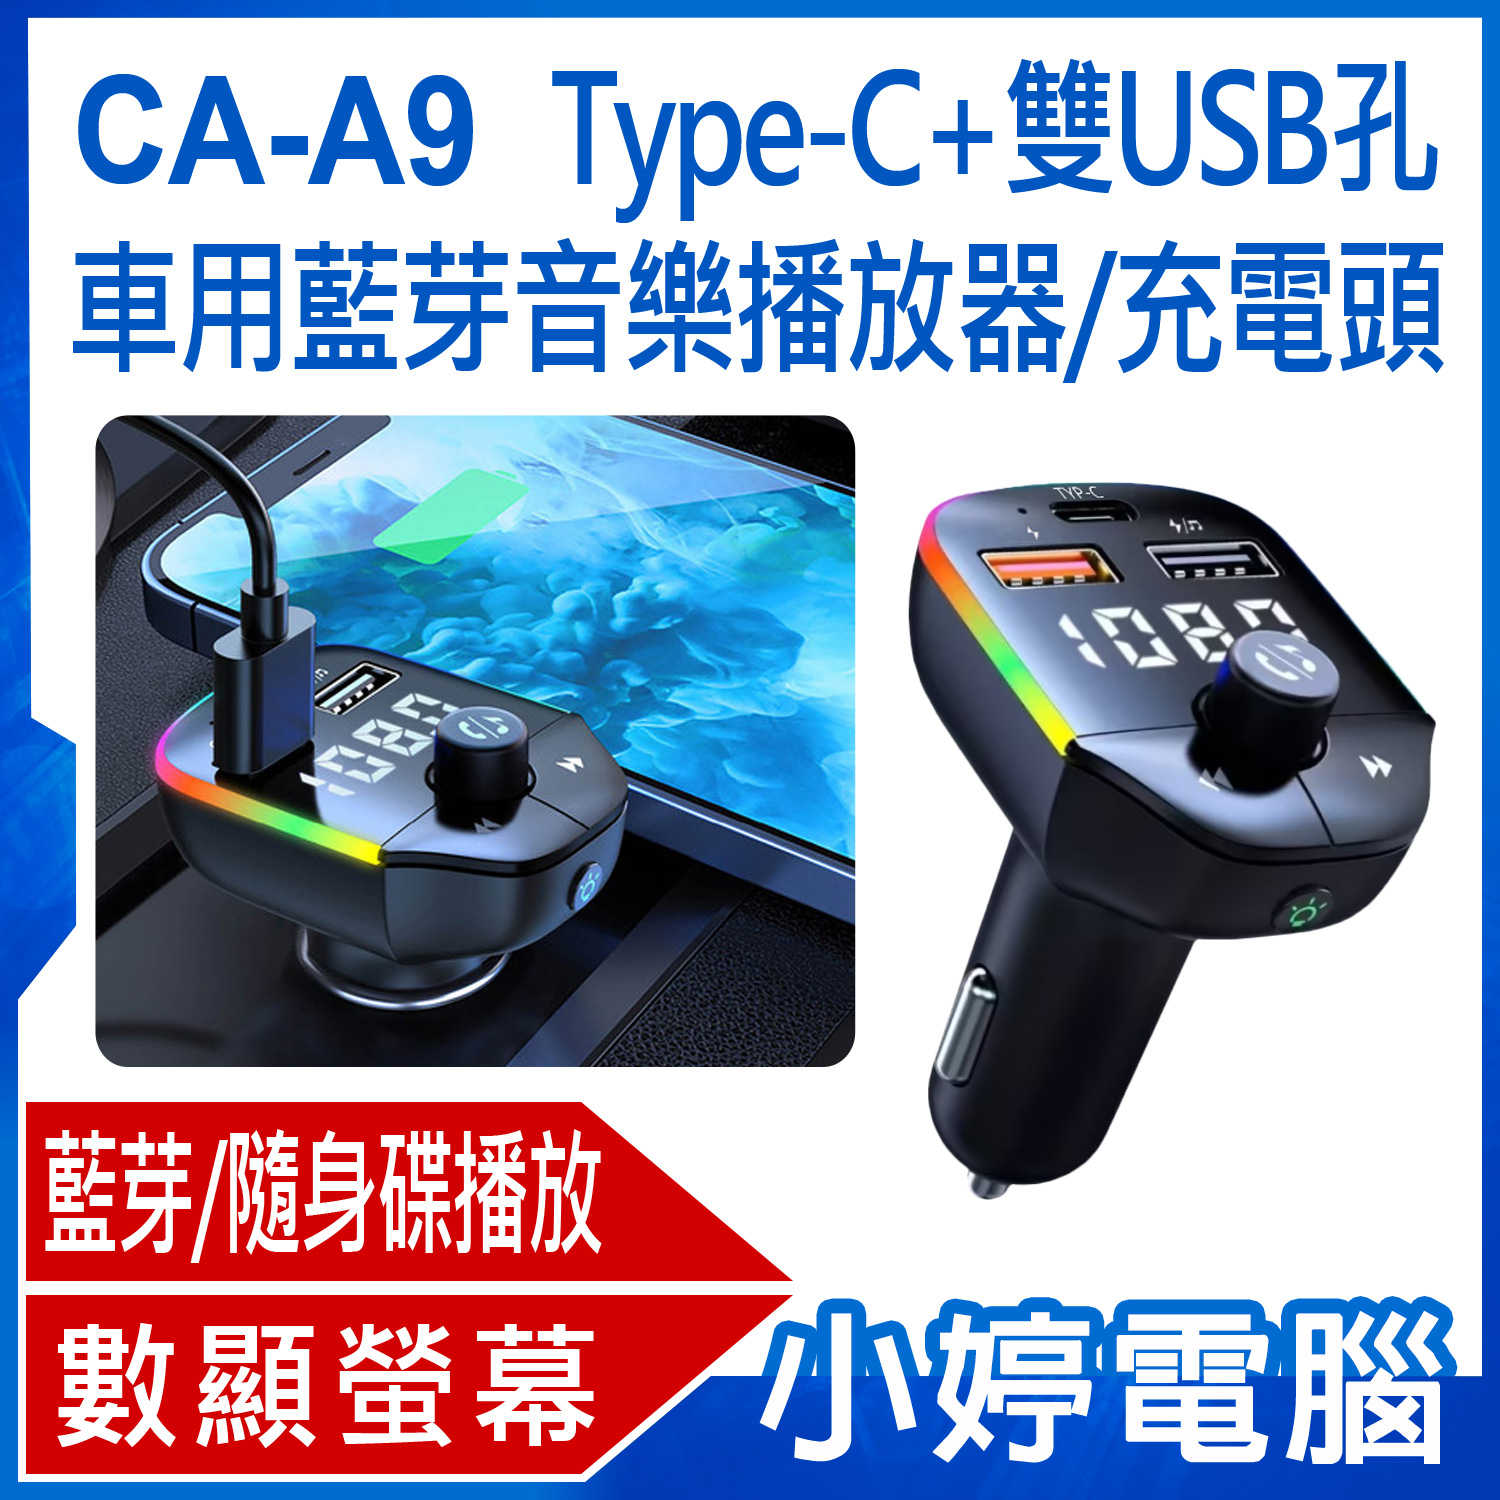 【小婷電腦】CA-A9 Type-C+雙USB孔 車用藍芽音樂播放器/充電頭 FM發射器/手機藍芽/隨身碟播放